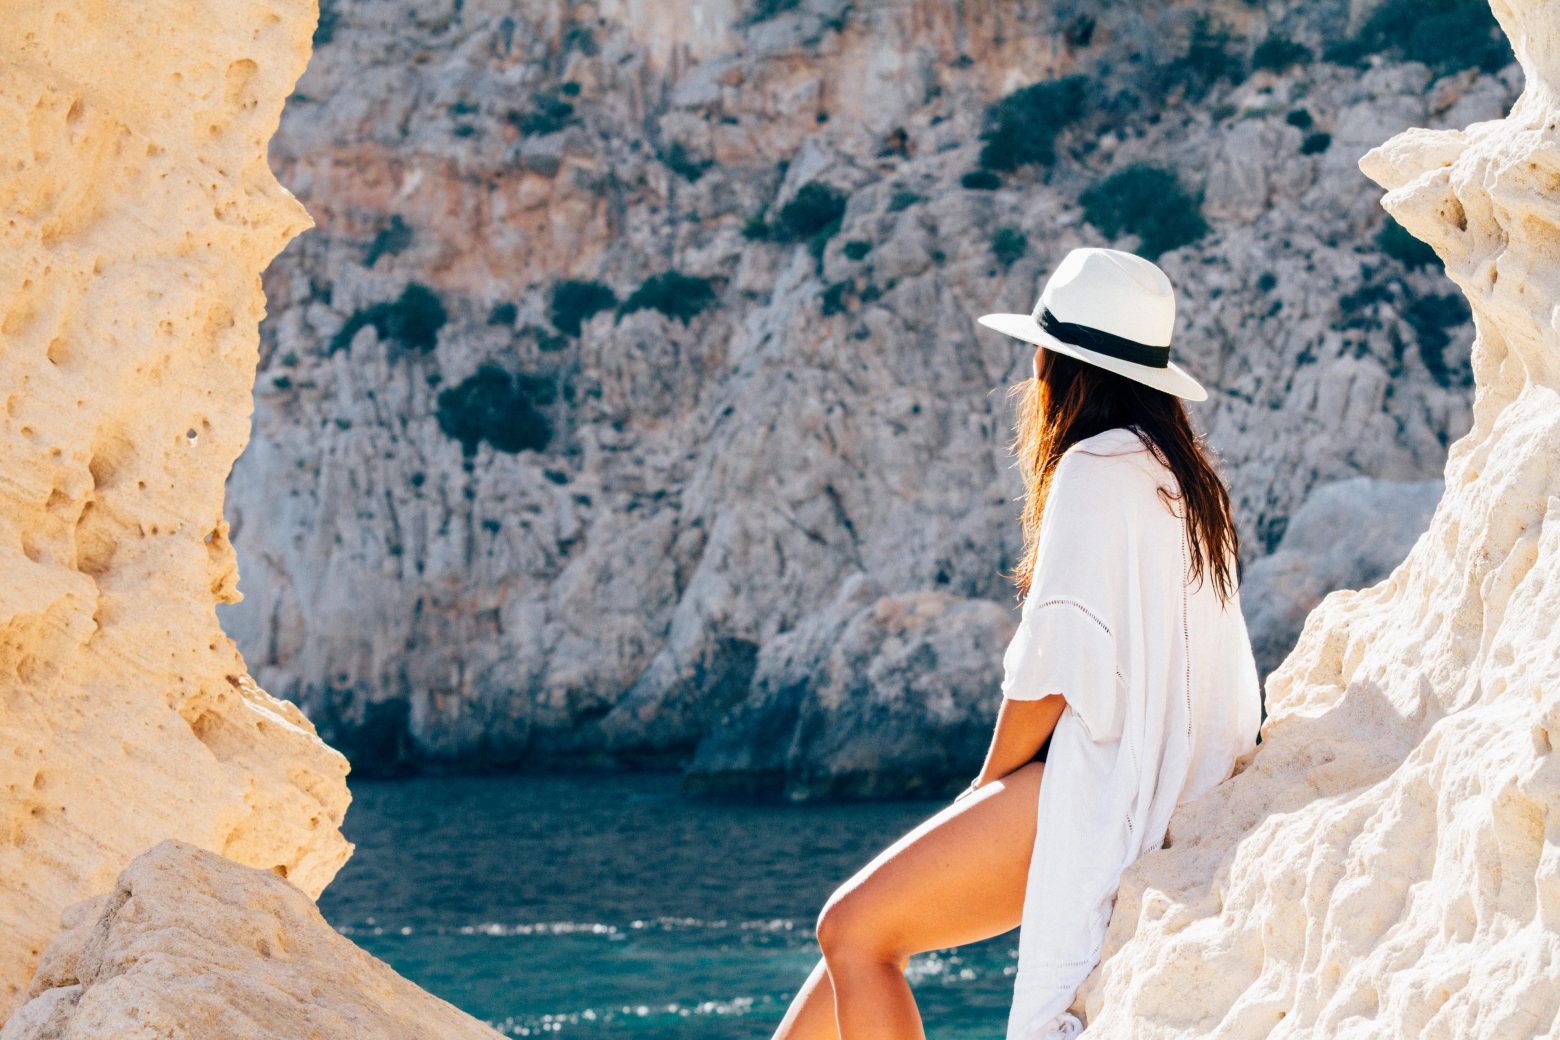 Ελληνικό το φθηνότερο νησί για να κάνετε διακοπές – Λίστα με τους 10 πιο οικονομικούς προορισμούς στην Ευρώπη